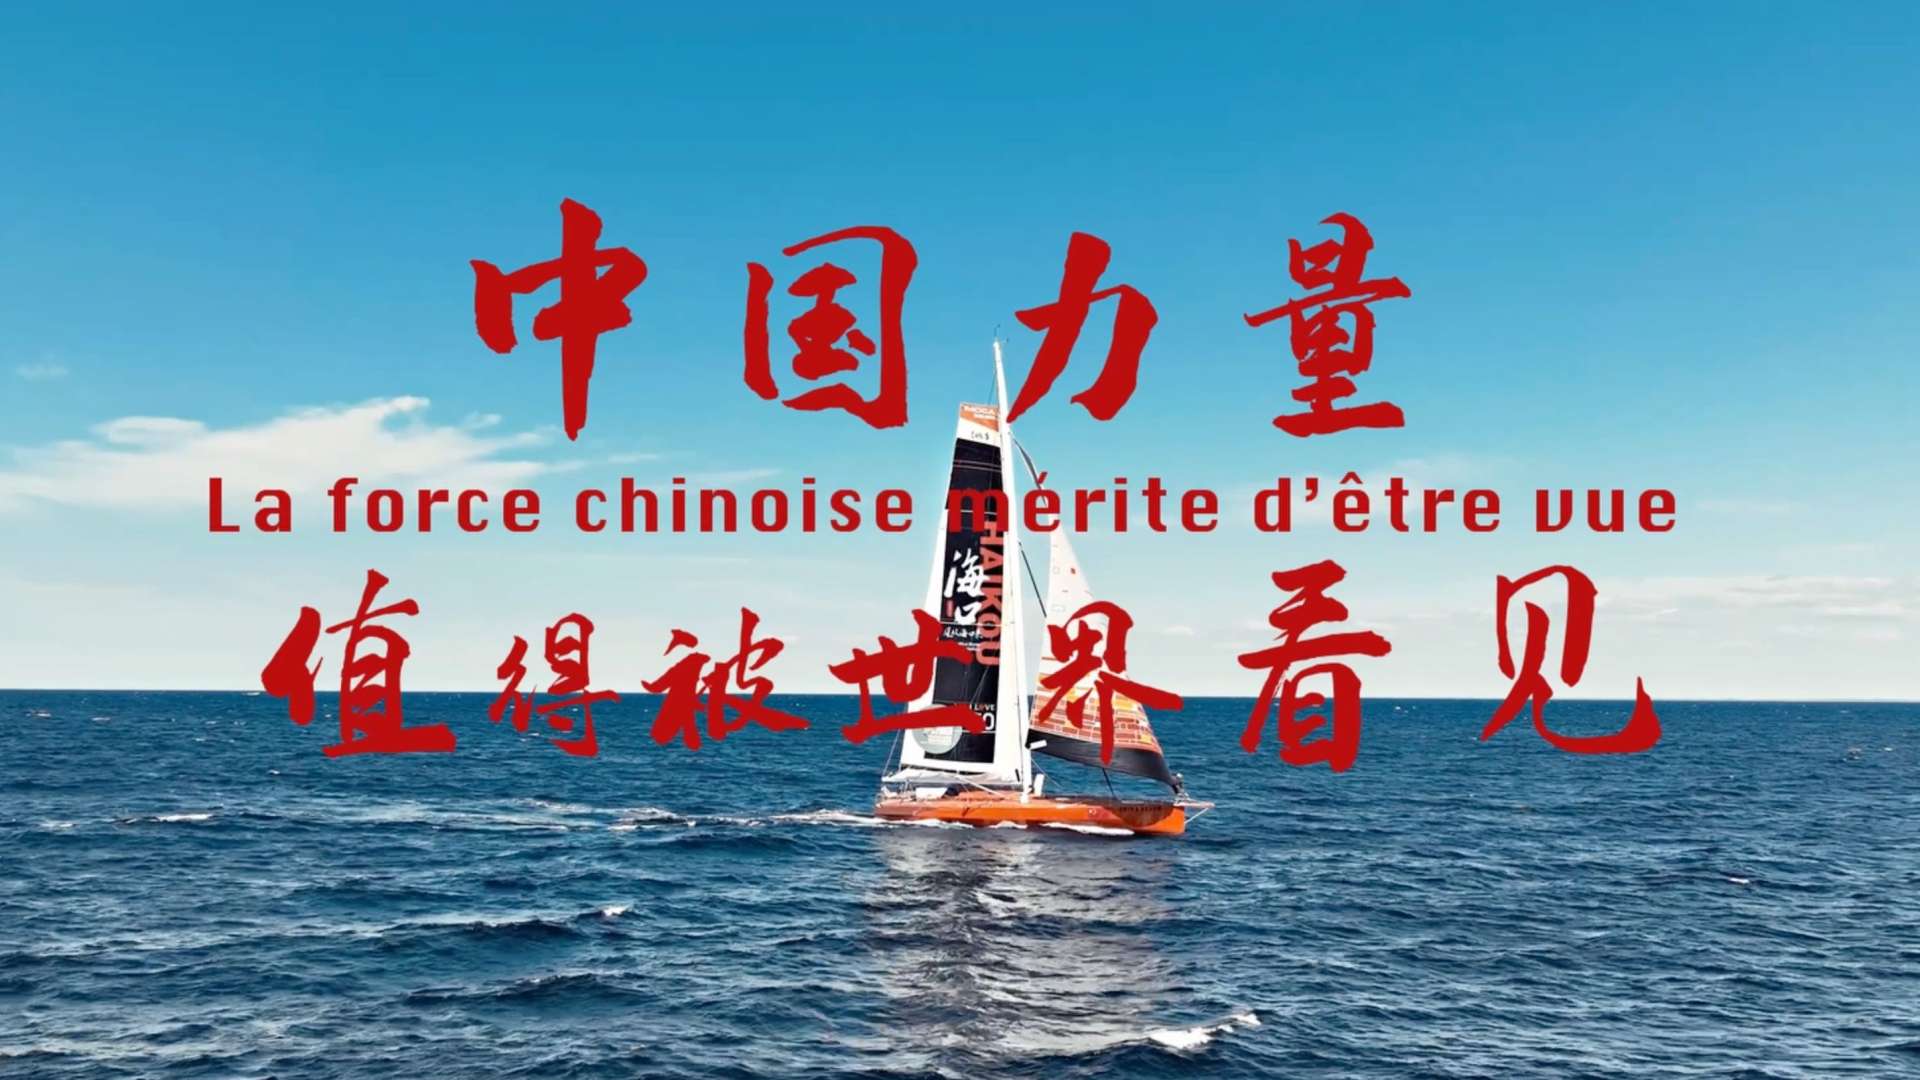 中国梦想海口号完成“朗姆路”跨大西洋单人帆船比赛